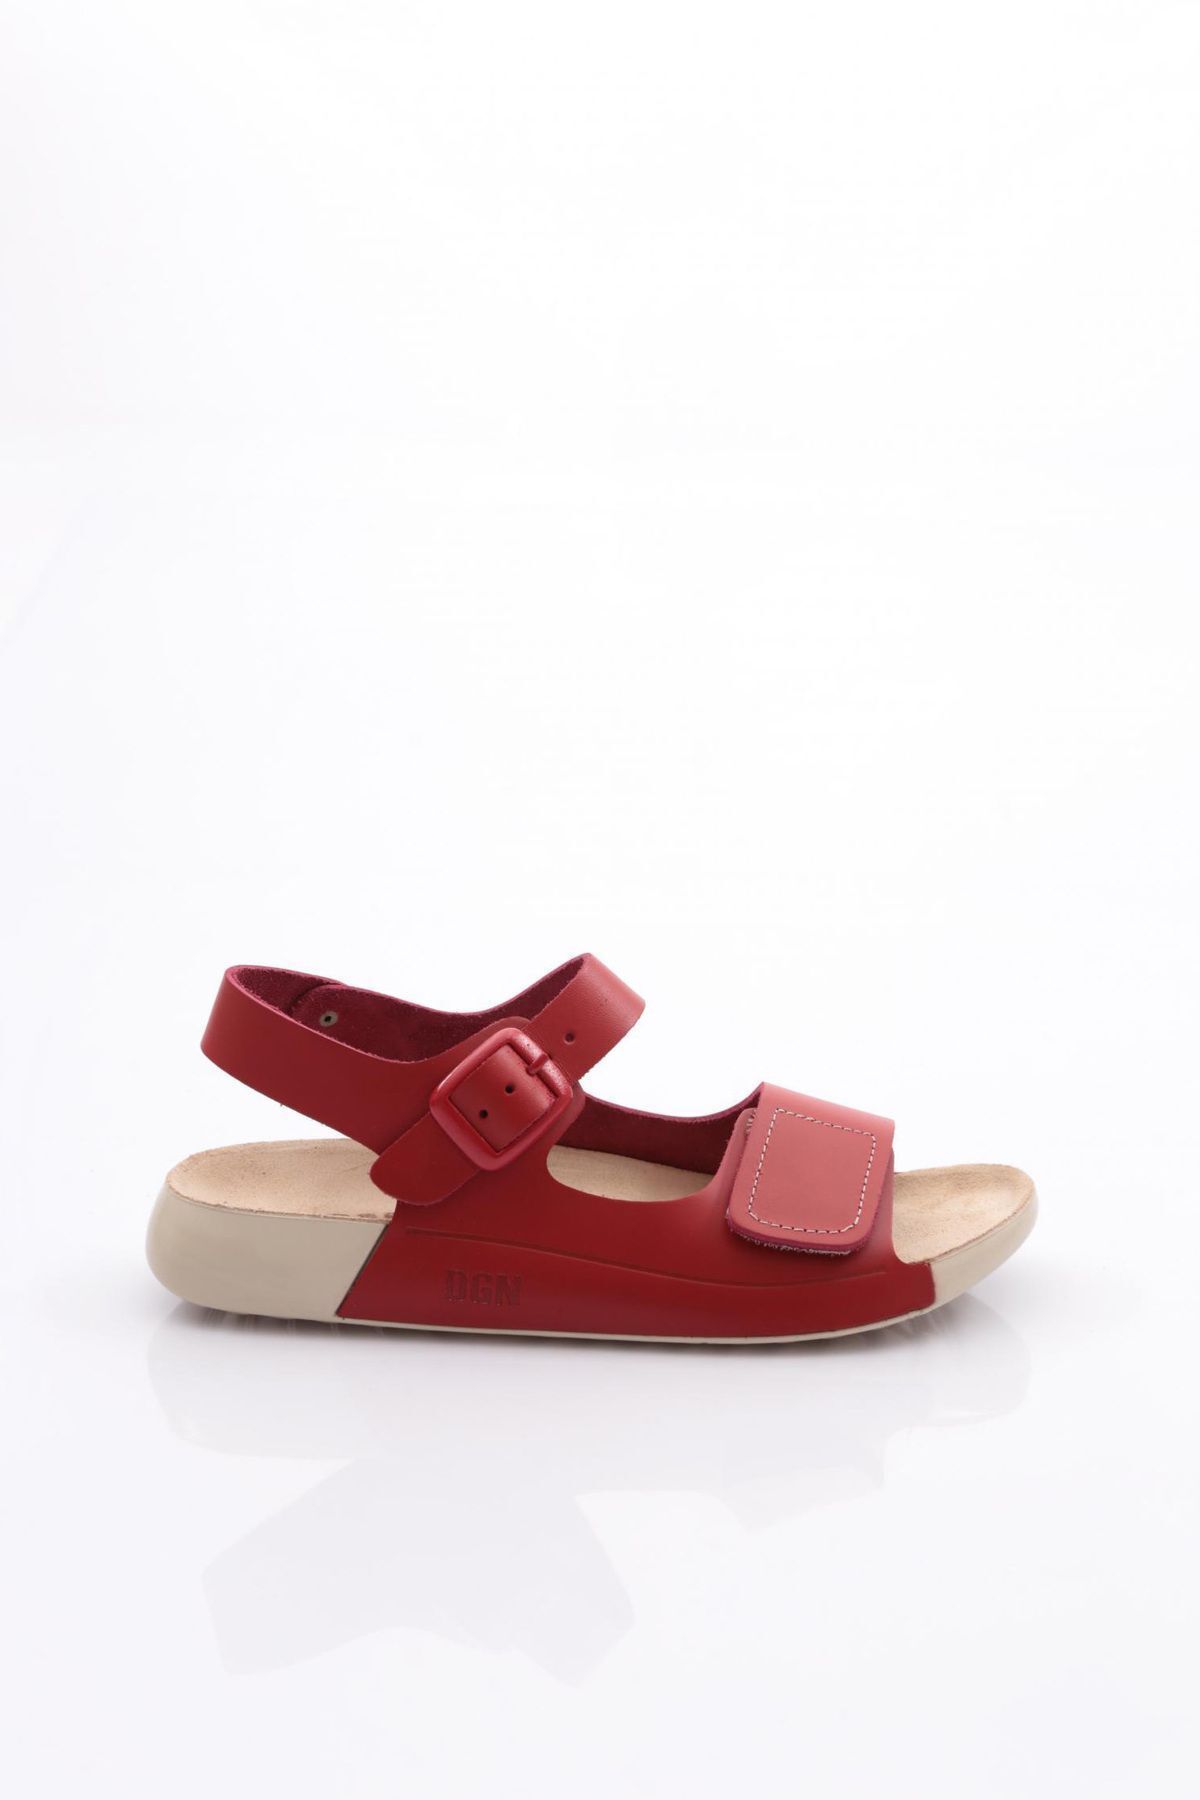 Dgn P28 Kadın Çift Bantlı Sandalet Kırmızı